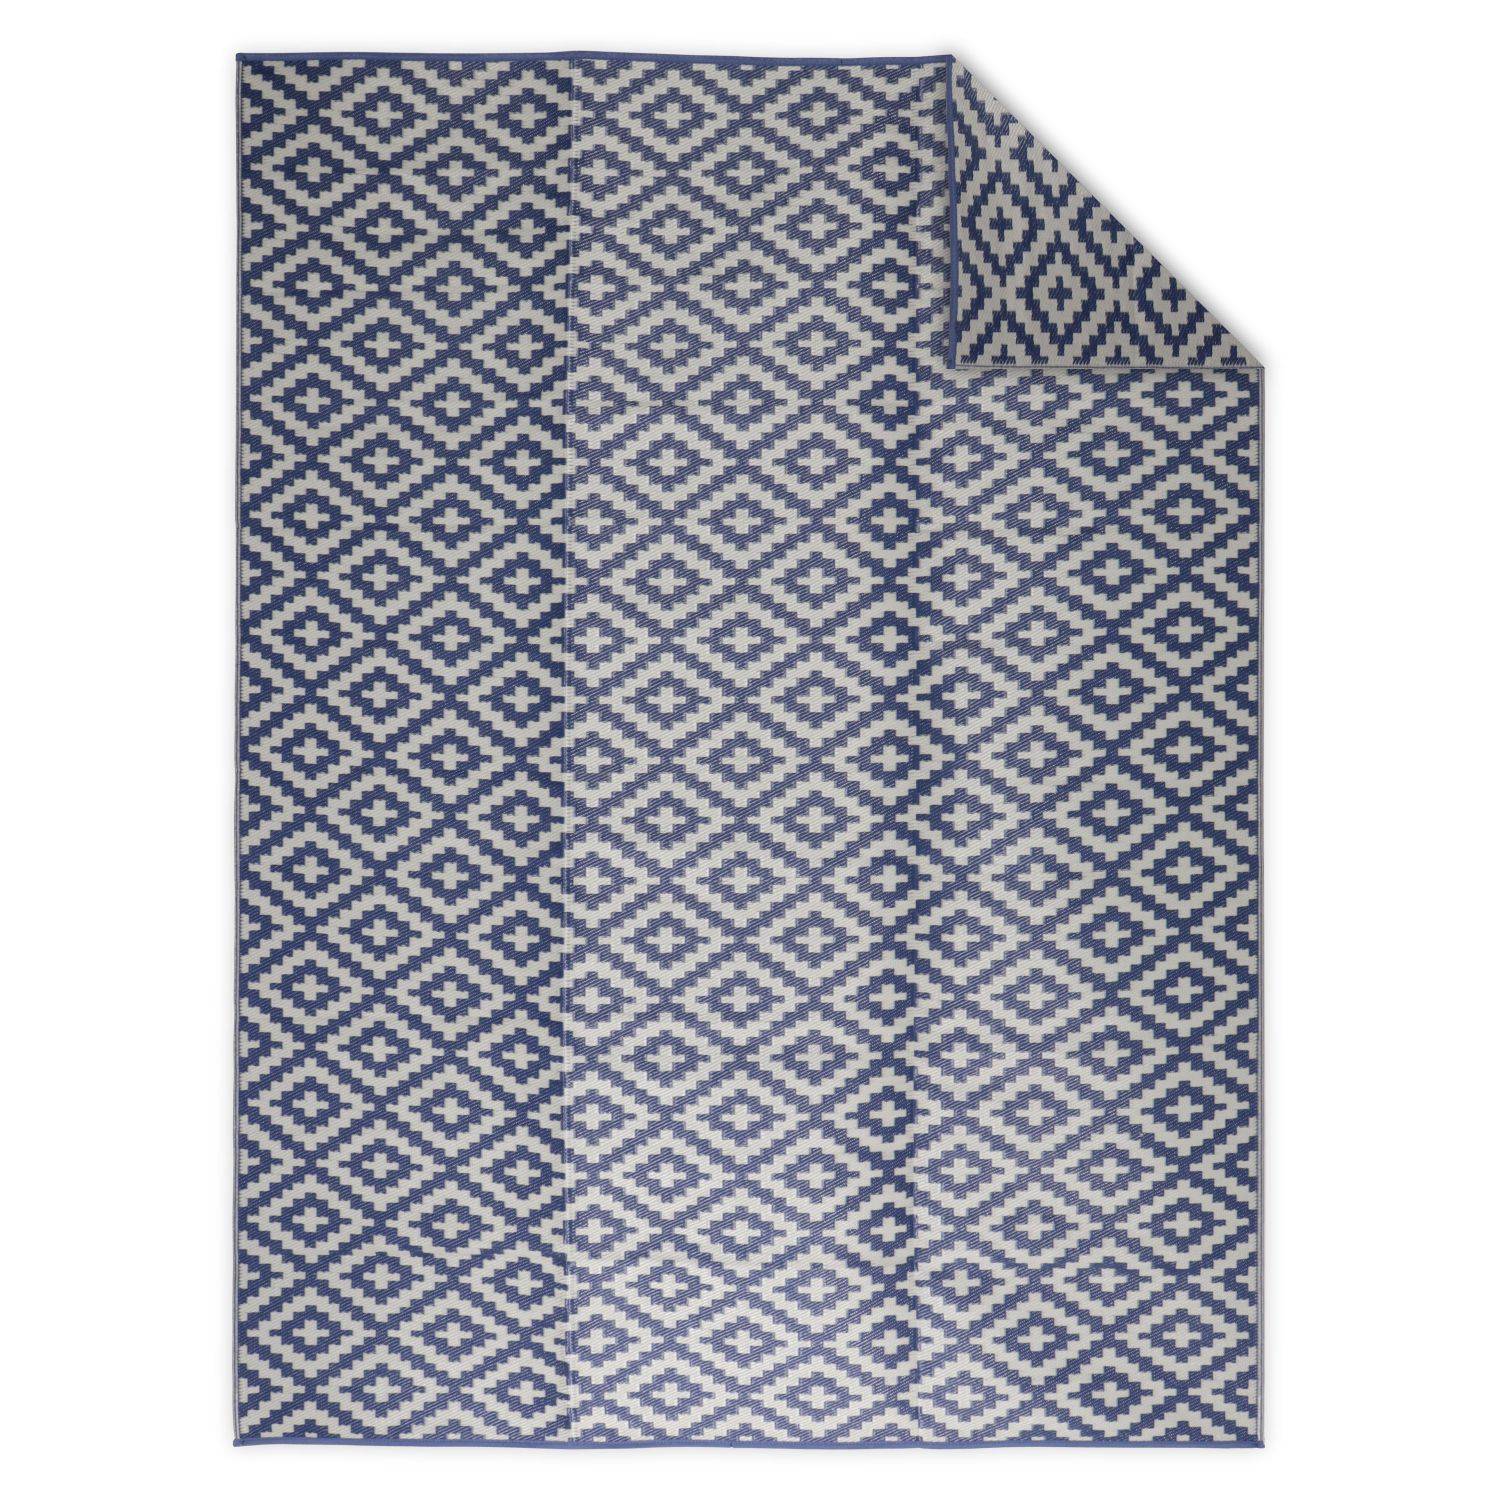 Tapis d’extérieur 270x360cm STOCKHOLM - Rectangulaire, motif losanges bleu / beige, jacquard, réversible, indoor / outdoor, | sweeek